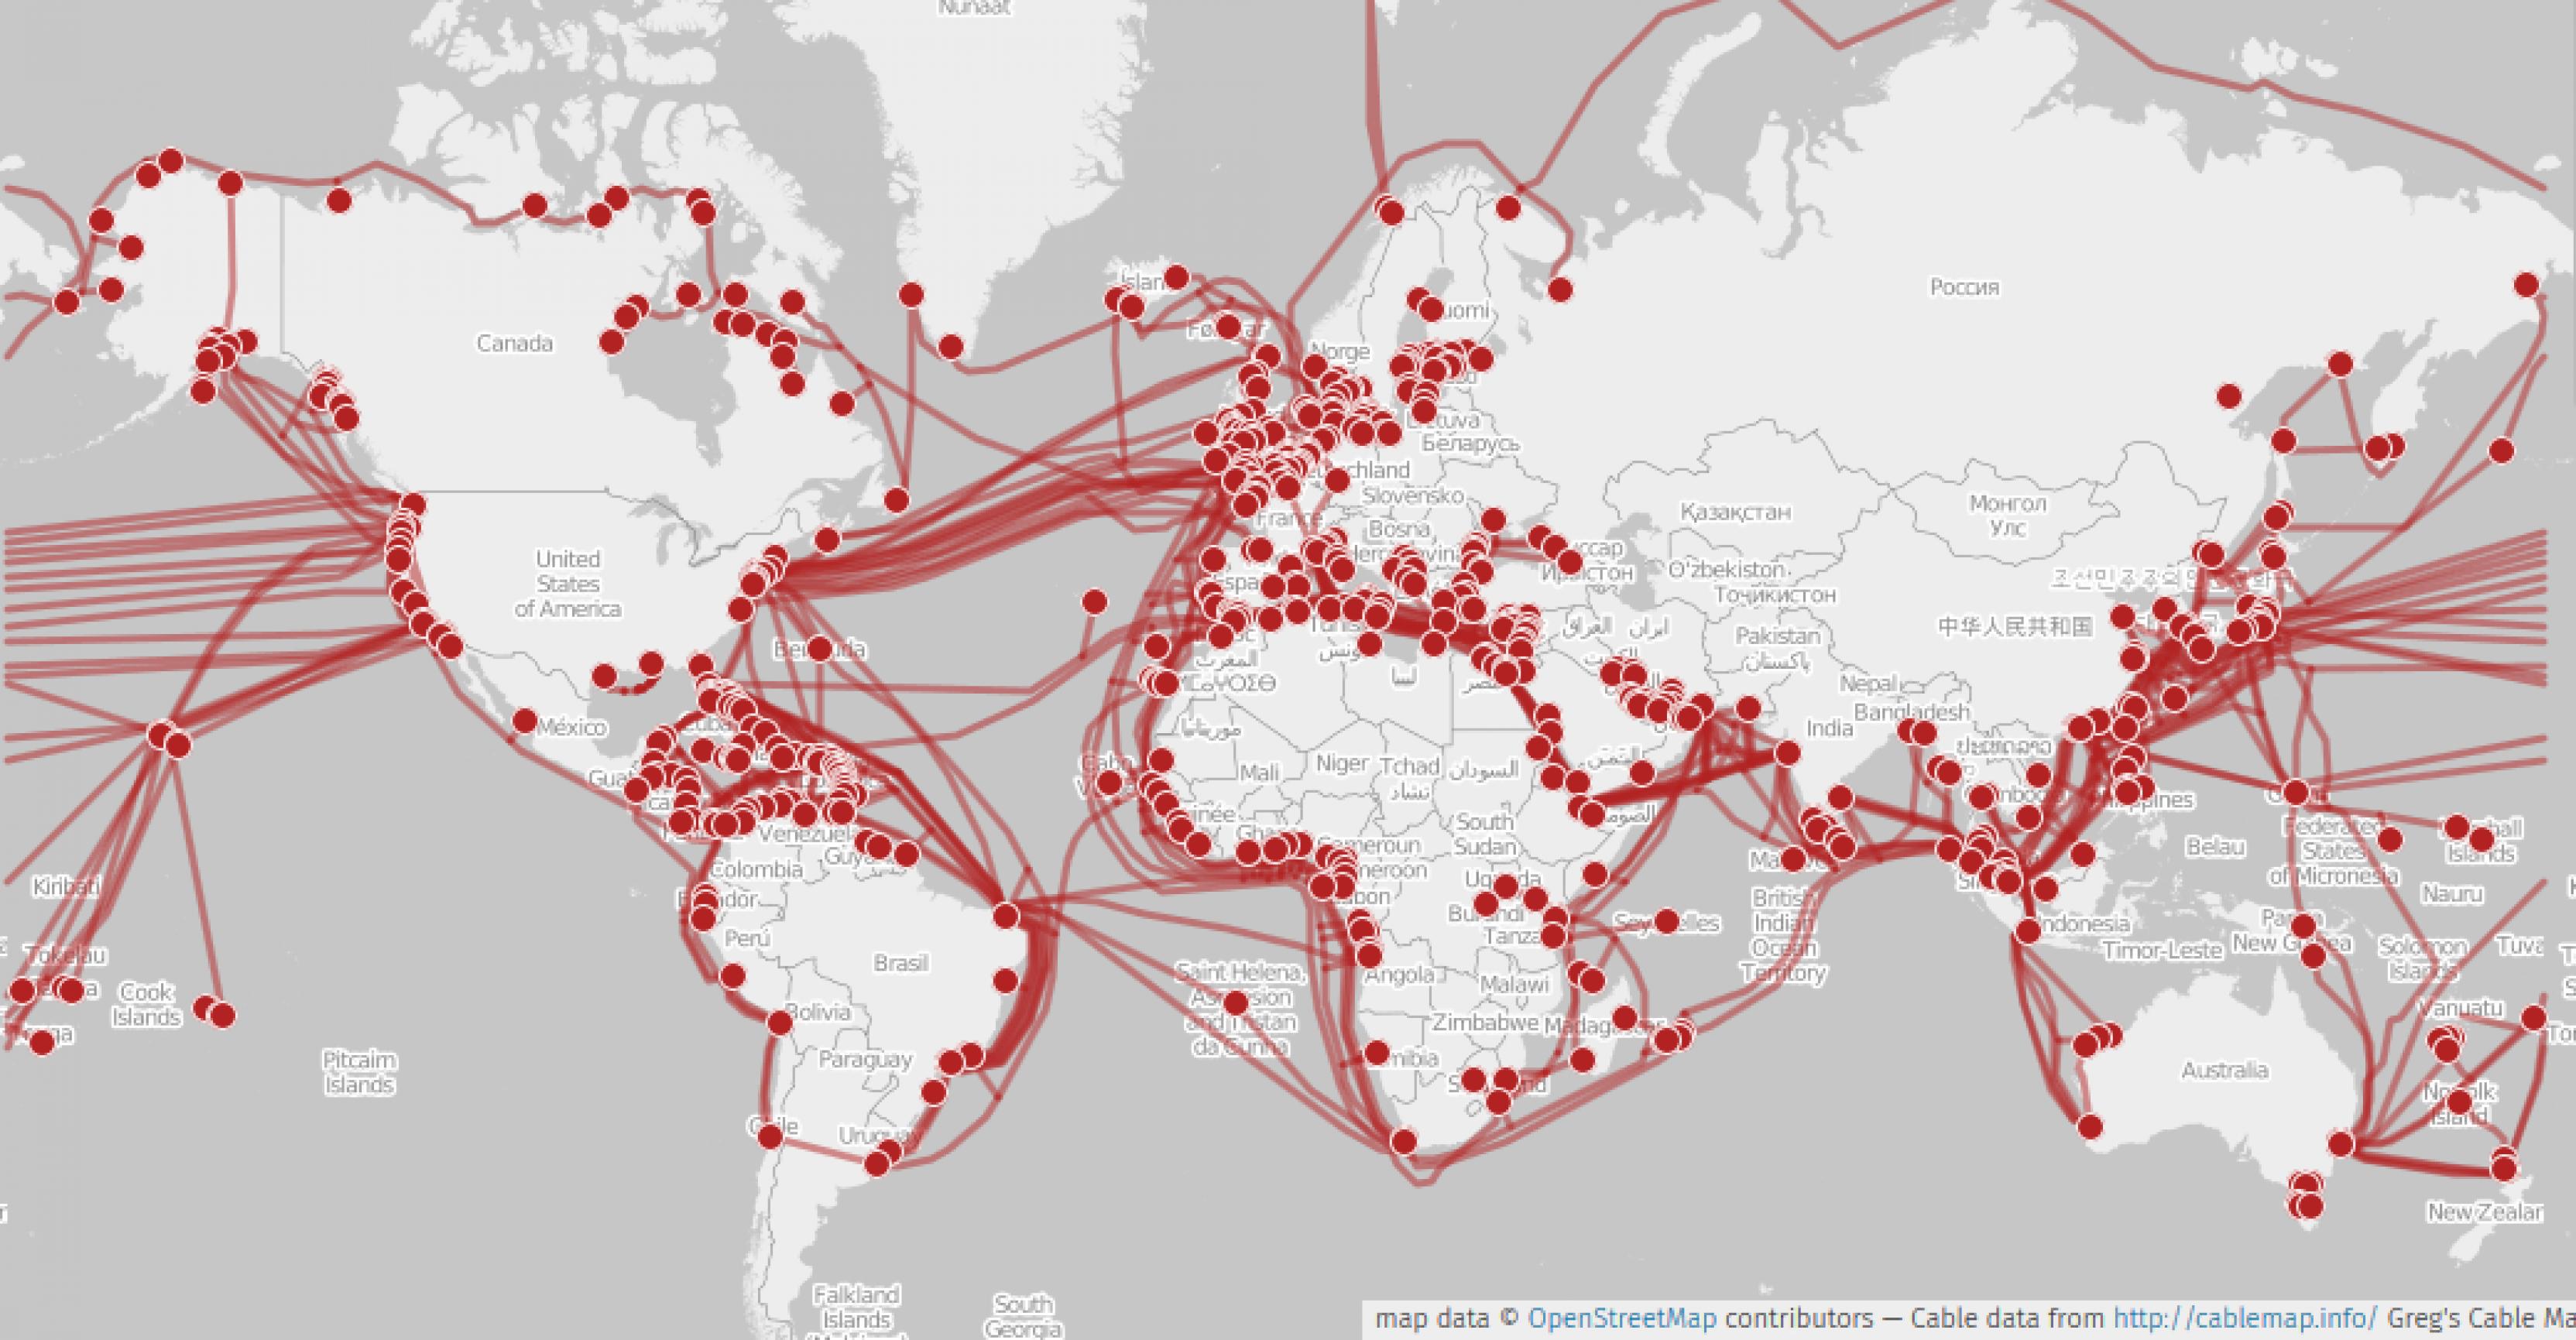 Karte von Internetkabeln im Meer, die in Europa, Nordamerika oder Ostasien deutlich zahlreicher sind als rund um Afrika